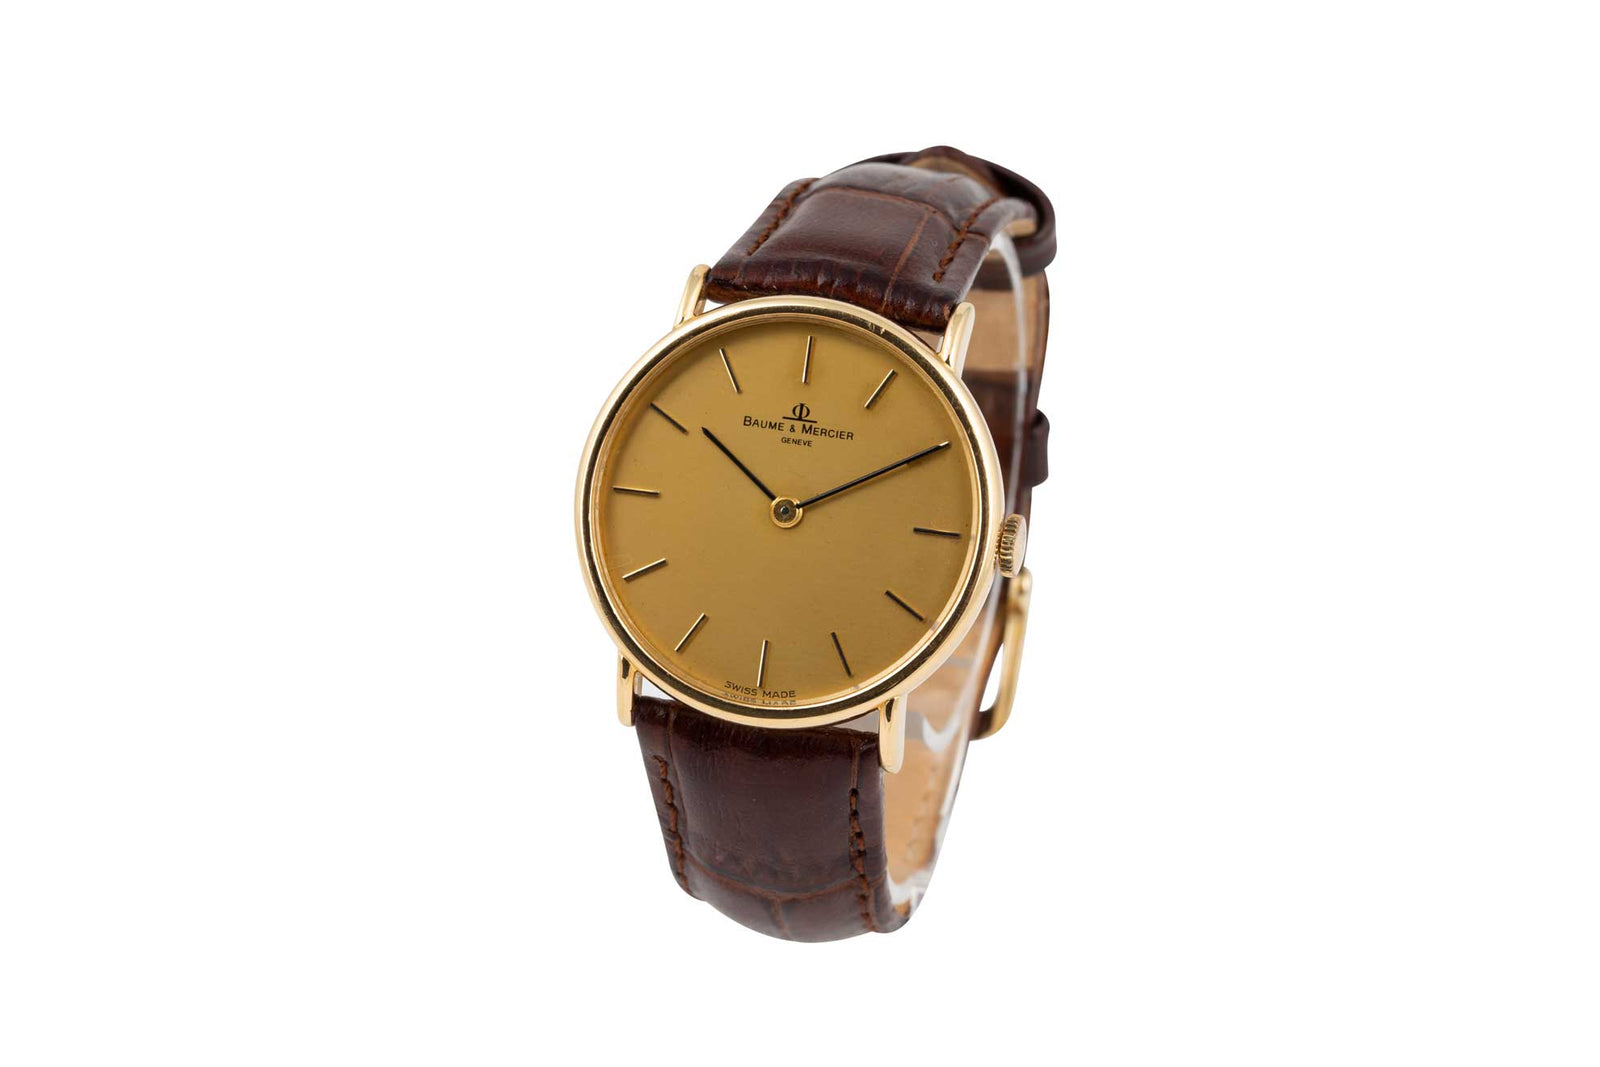 Baume & Mercier 18ct Wrist Watch